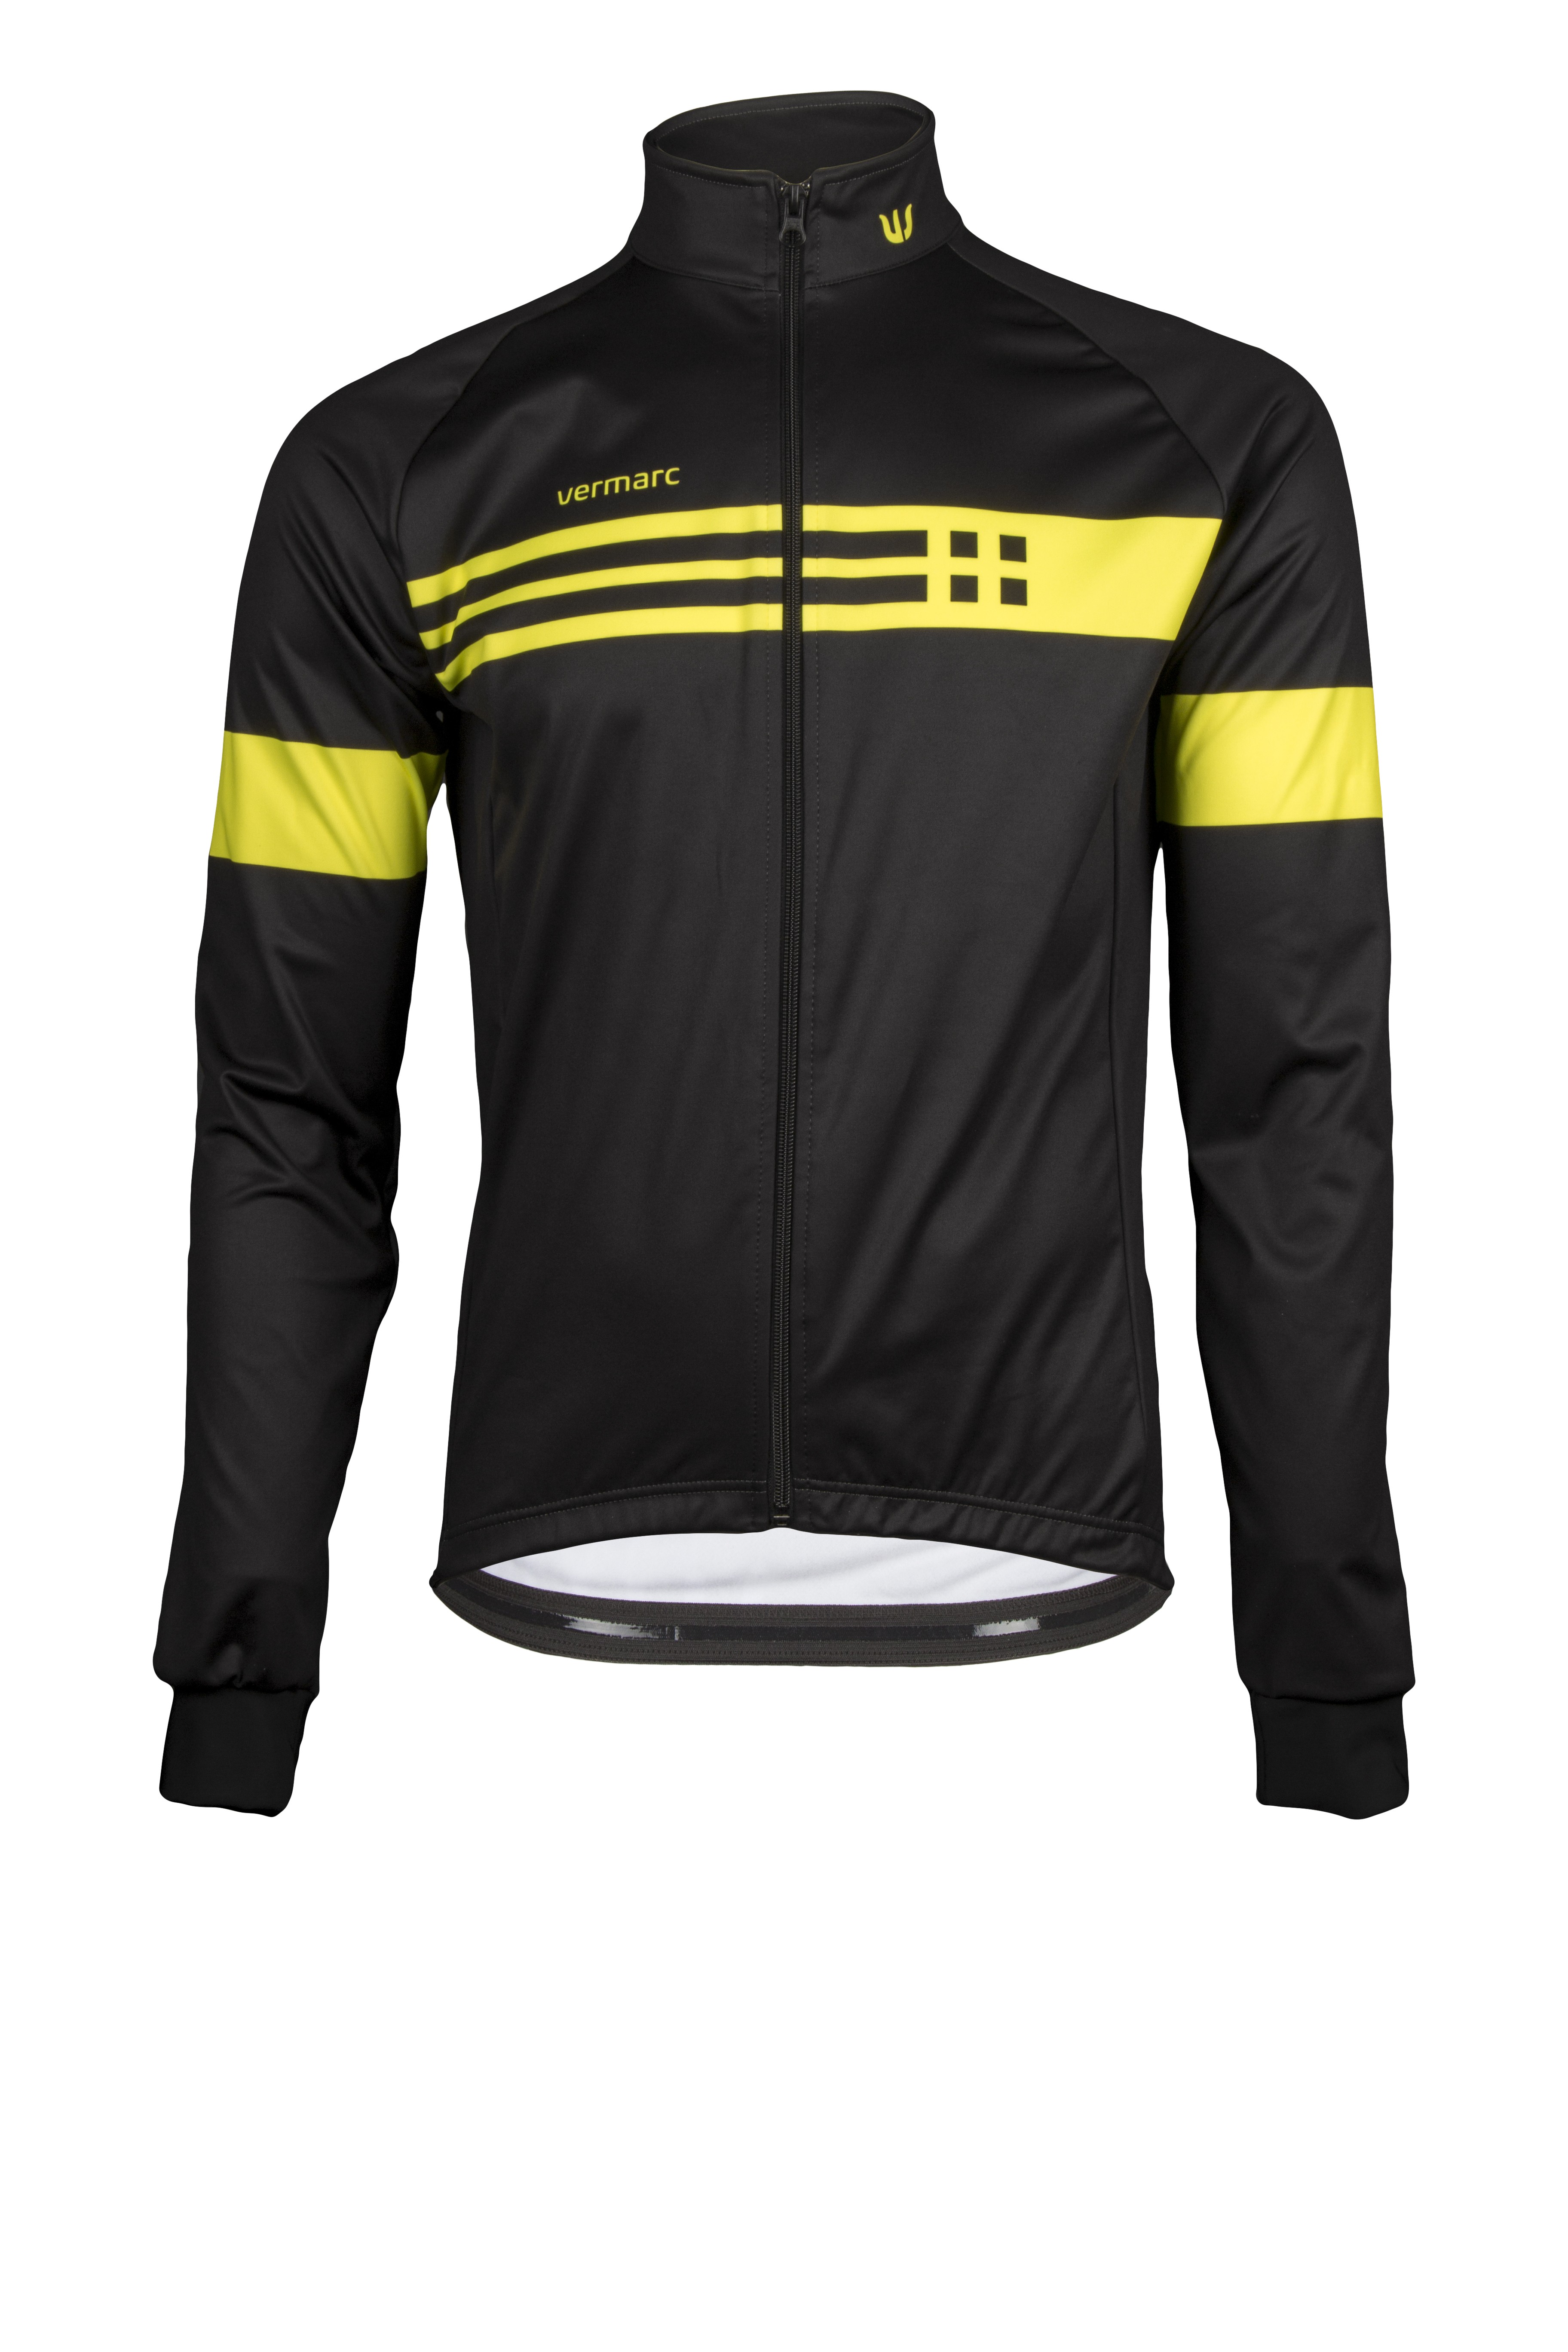 Vermarc squadra mid season fietsjack zwart fluo geel